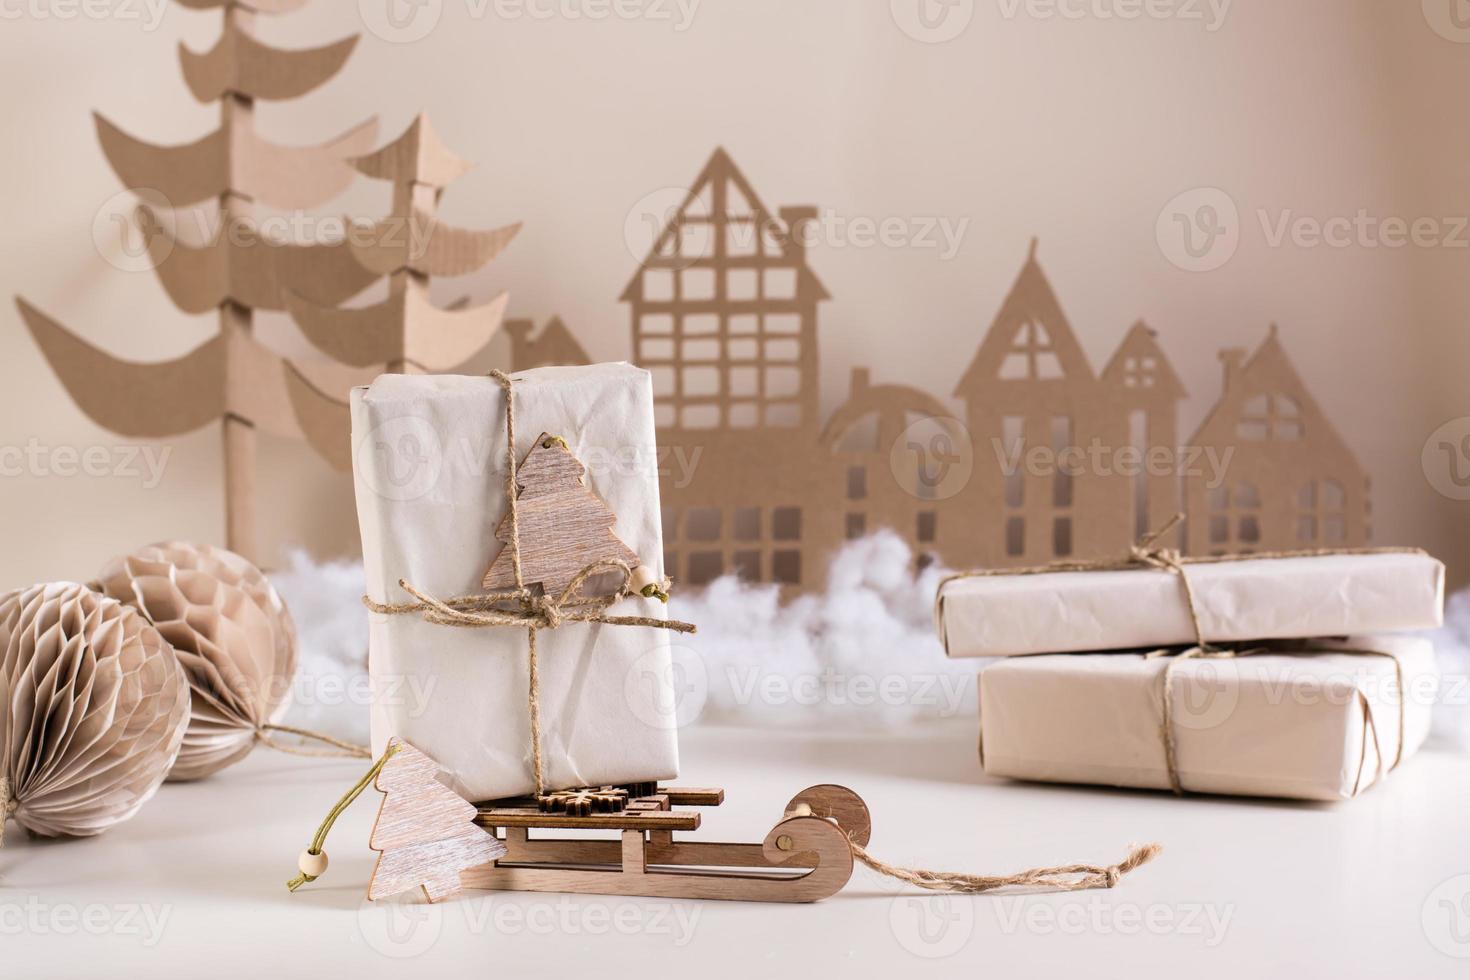 diy weihnachtliche wohndeko – geschenk aus bastelpapier auf einem schlitten, einem baum aus pappe und einem haus. handgefertigt foto